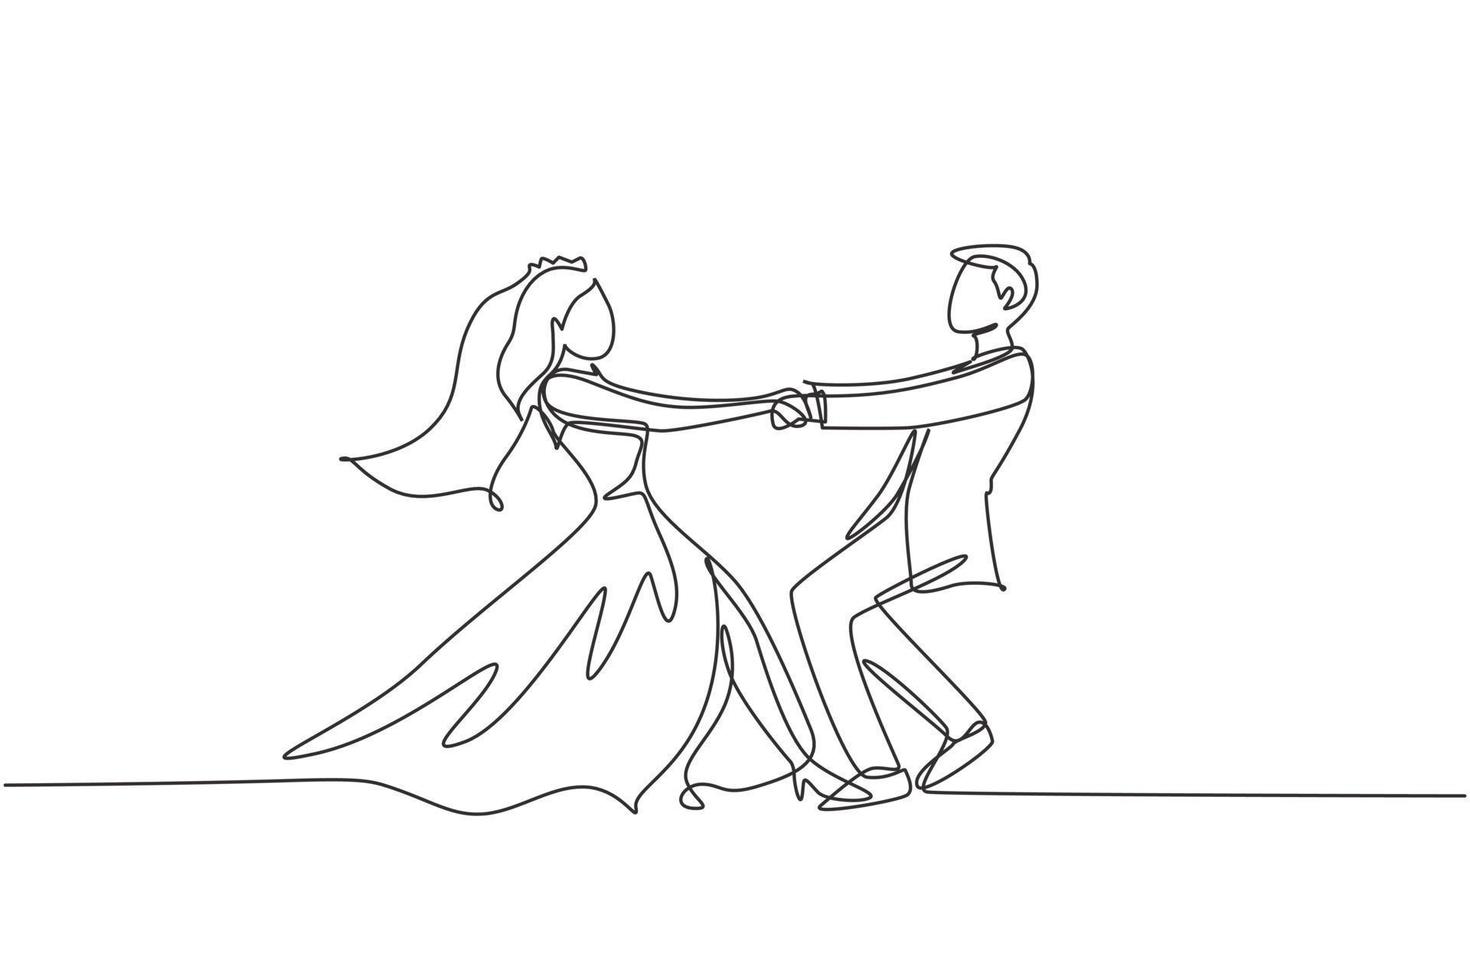 Eine einzige Linie, die einen glücklichen, süßen, verheirateten Mann und eine Frau zeichnet, die im Partypark auf dem Boden tanzen. romantisches junges hochzeitspaar, das hände hält und sich dreht. Design-Grafikvektor mit kontinuierlicher Linie vektor